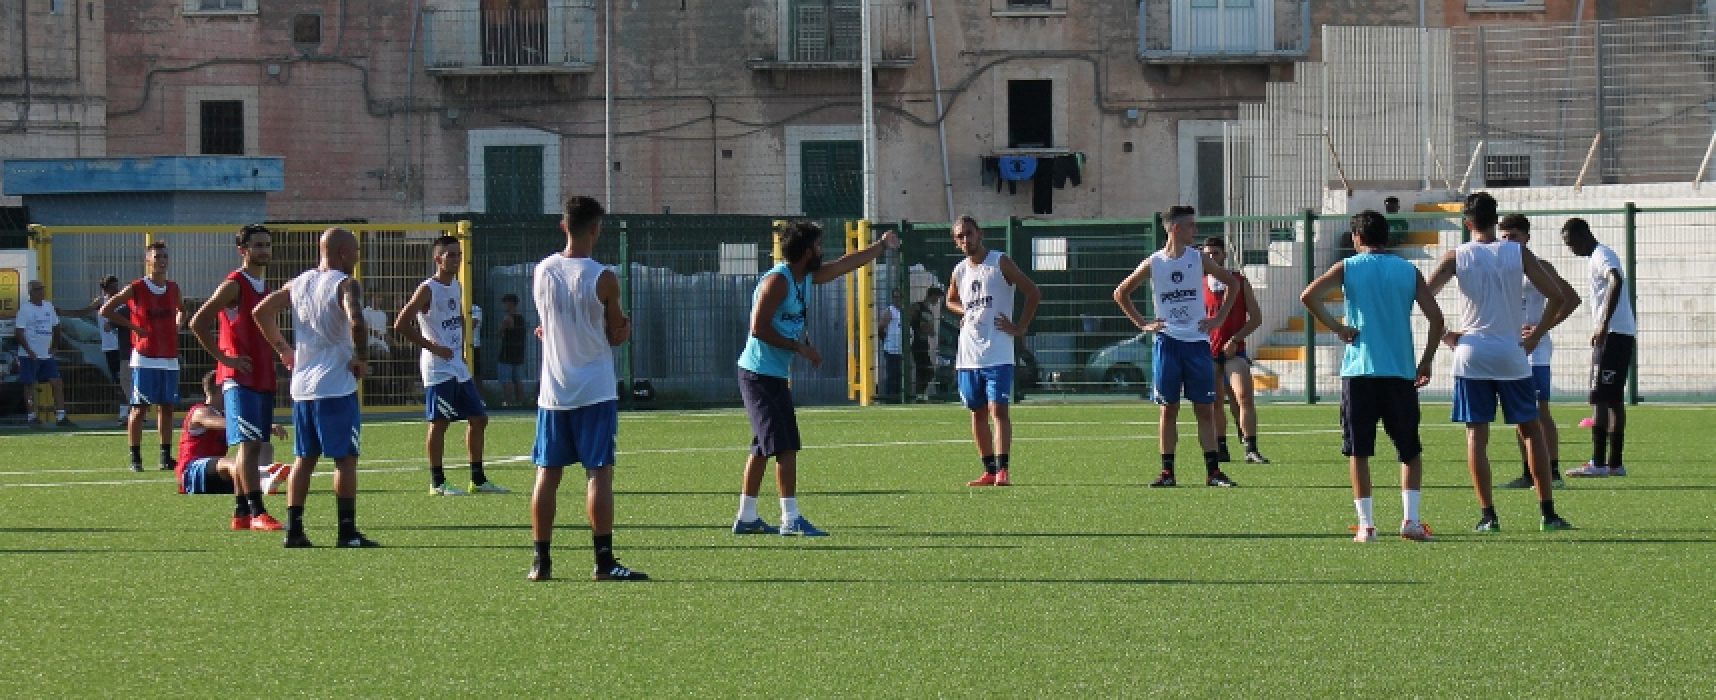 Unione Calcio, inaugurata la nuova stagione con il raduno al “Di Liddo” / FOTO